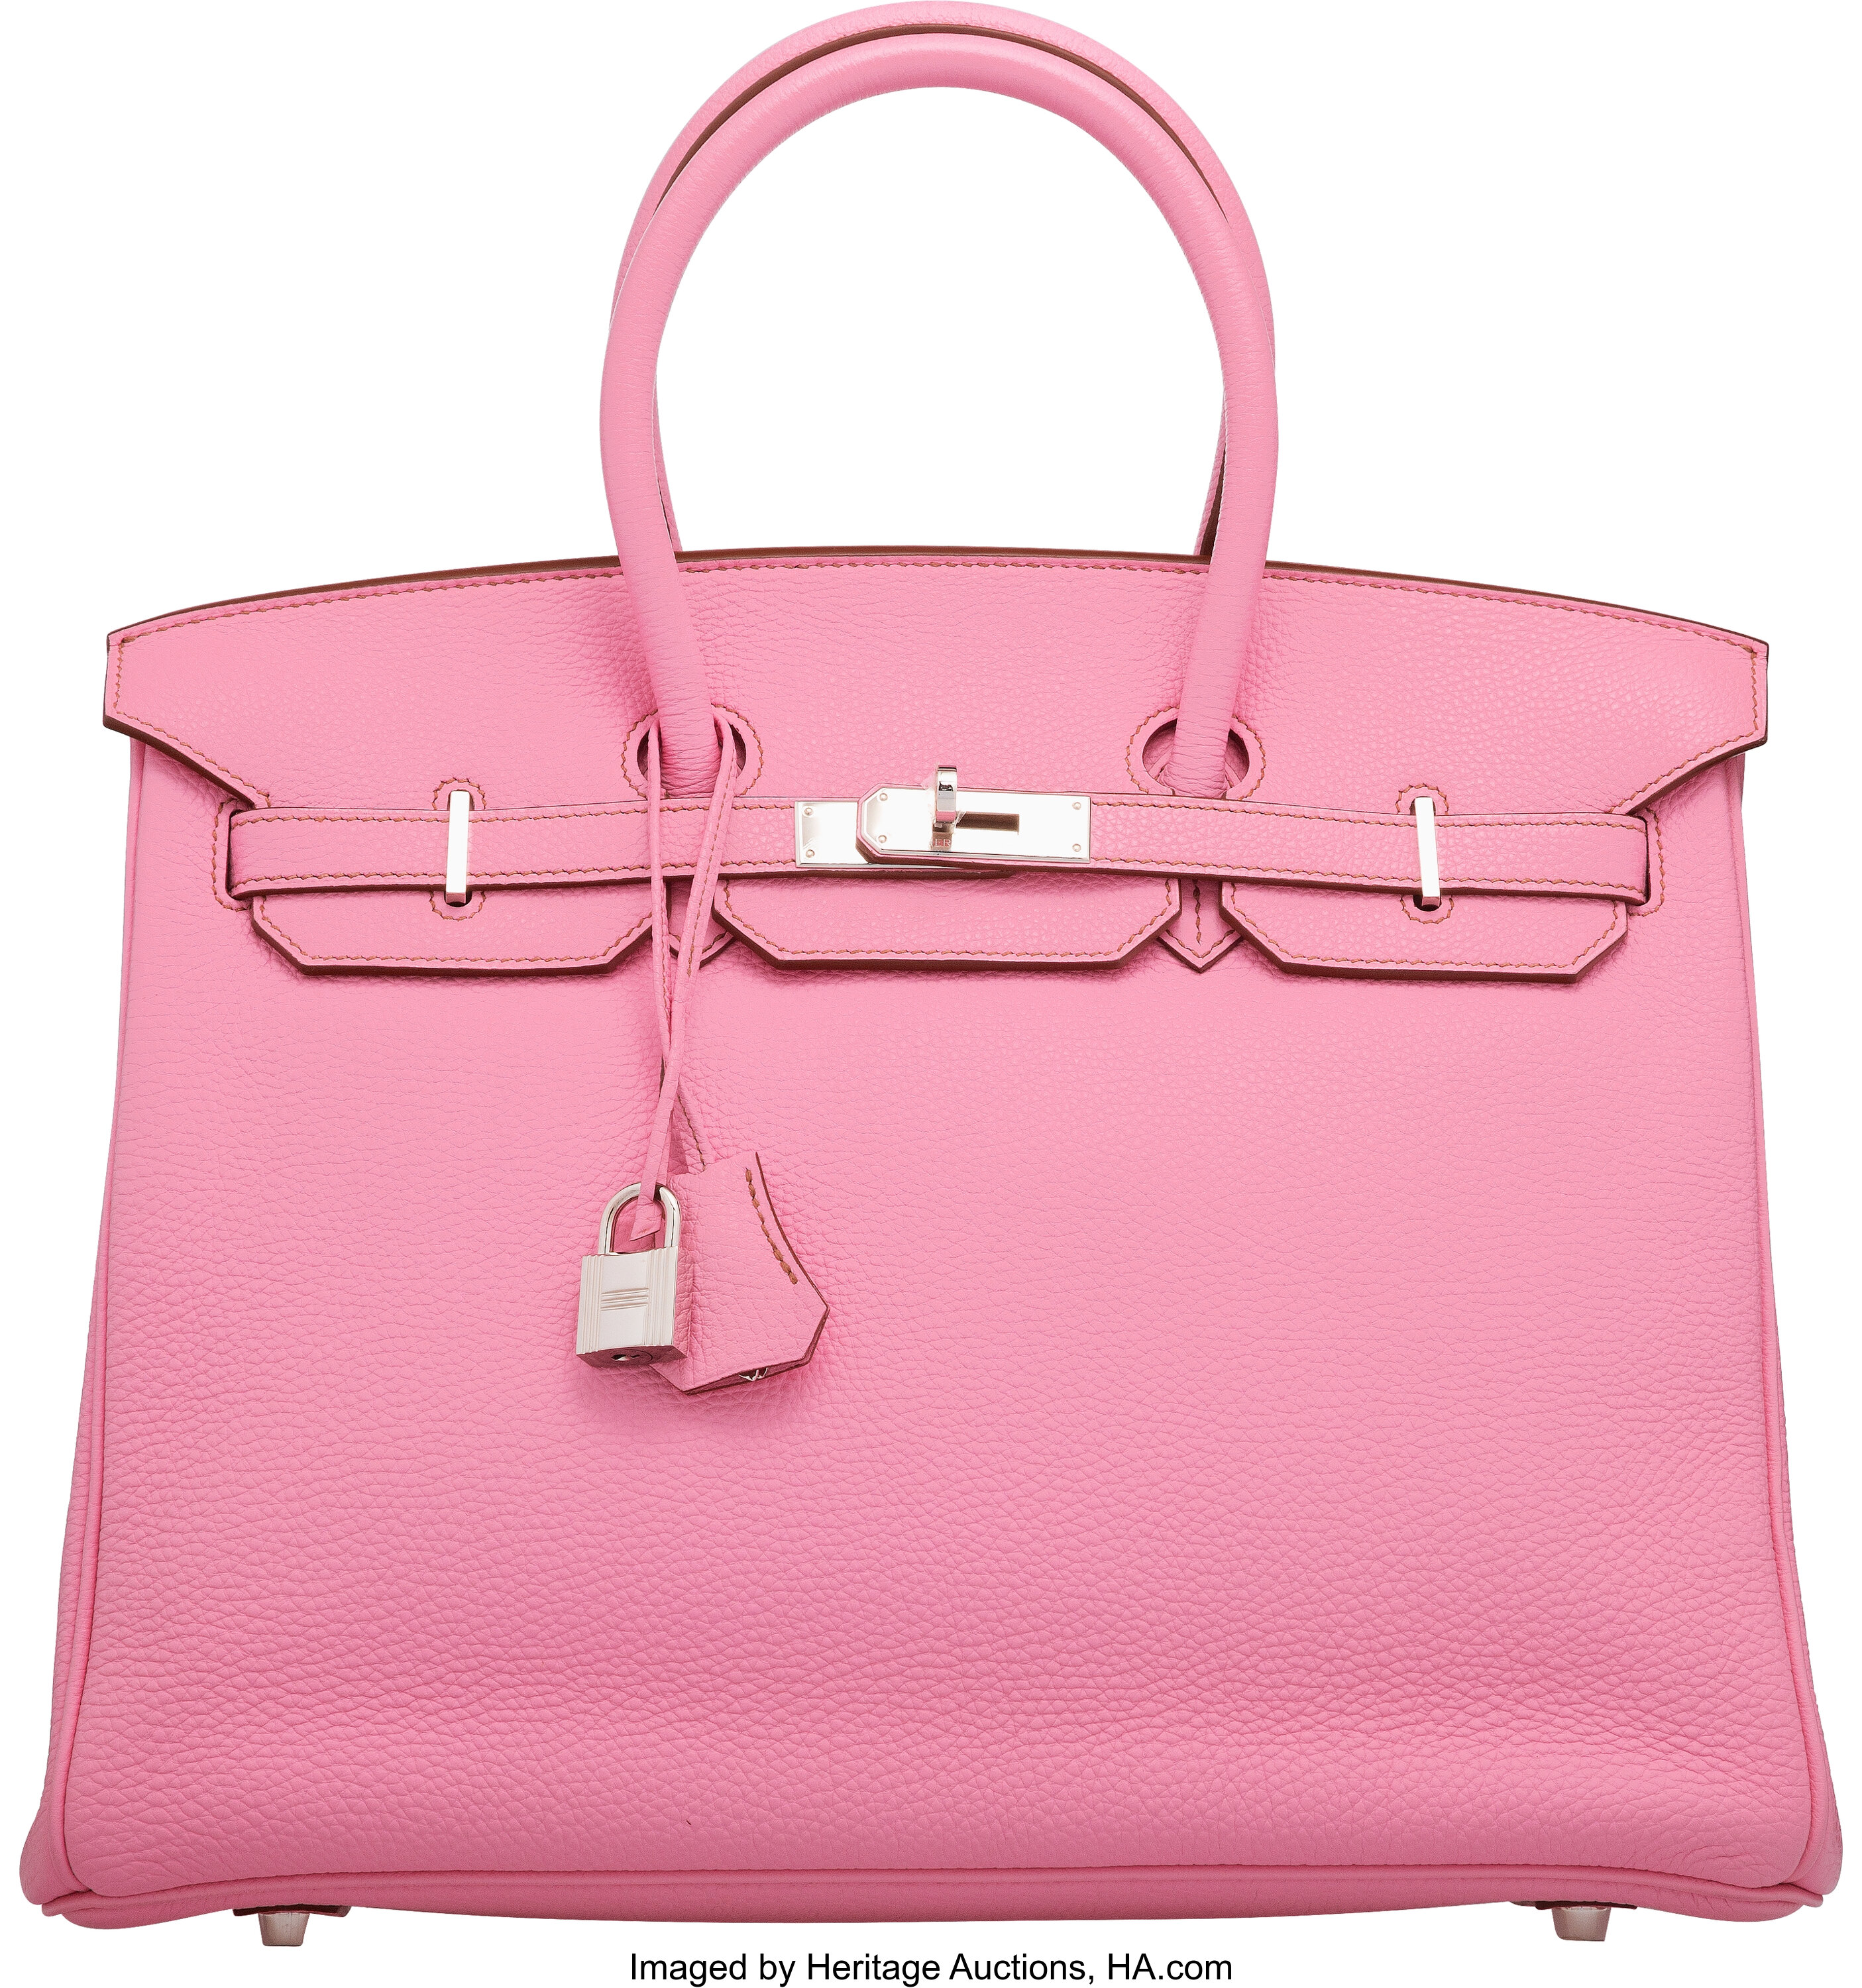 Hermes 35cm 5P Bubblegum Pink Togo Leather Birkin Bag with | Lot #58232 ...